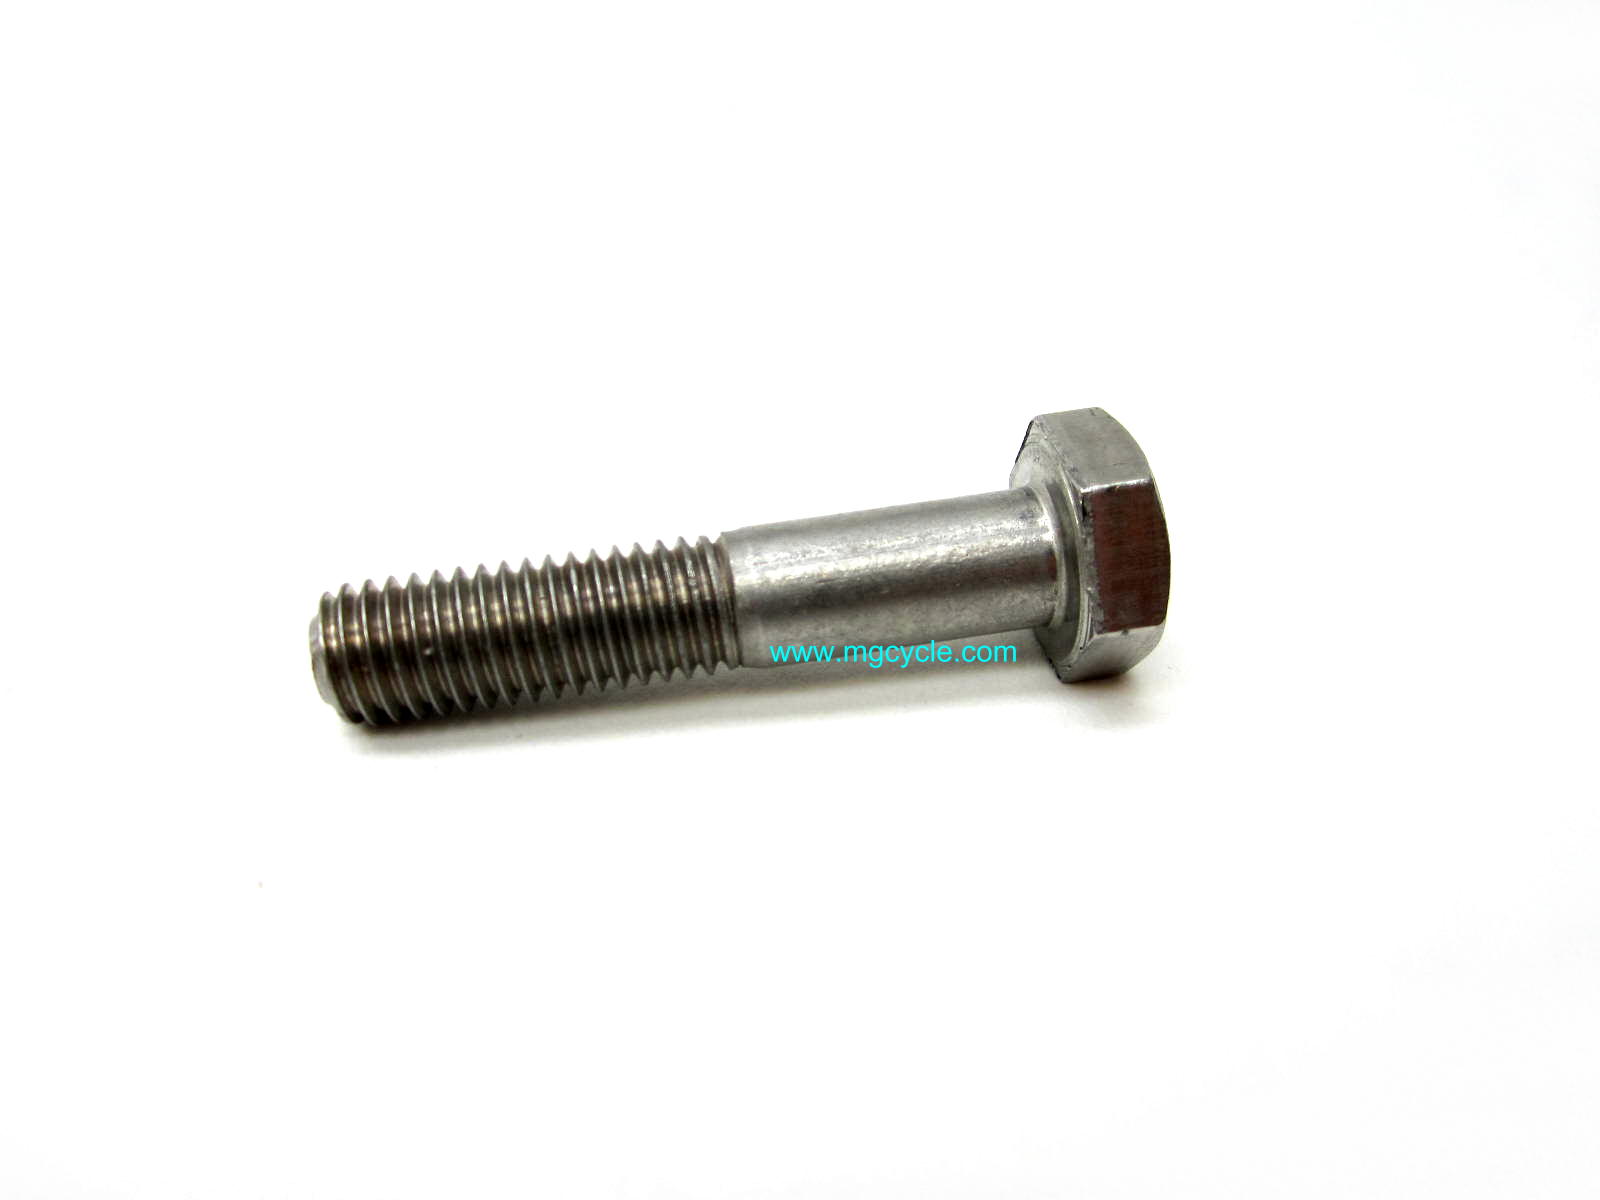 centerstand pivot bolt, 50mm long